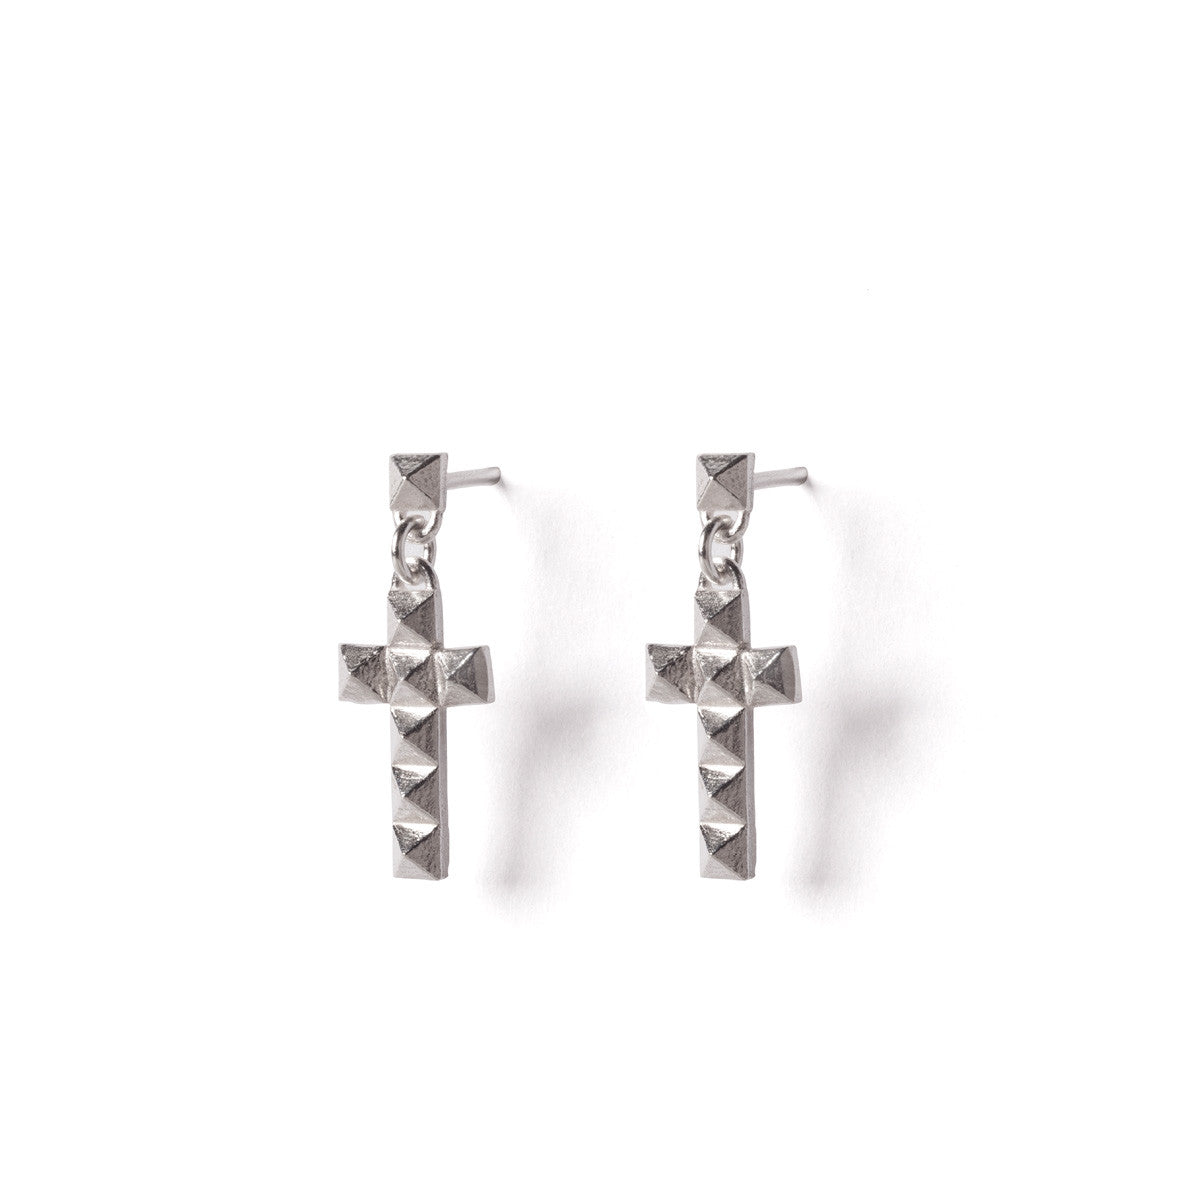 Silver cross studs earrings